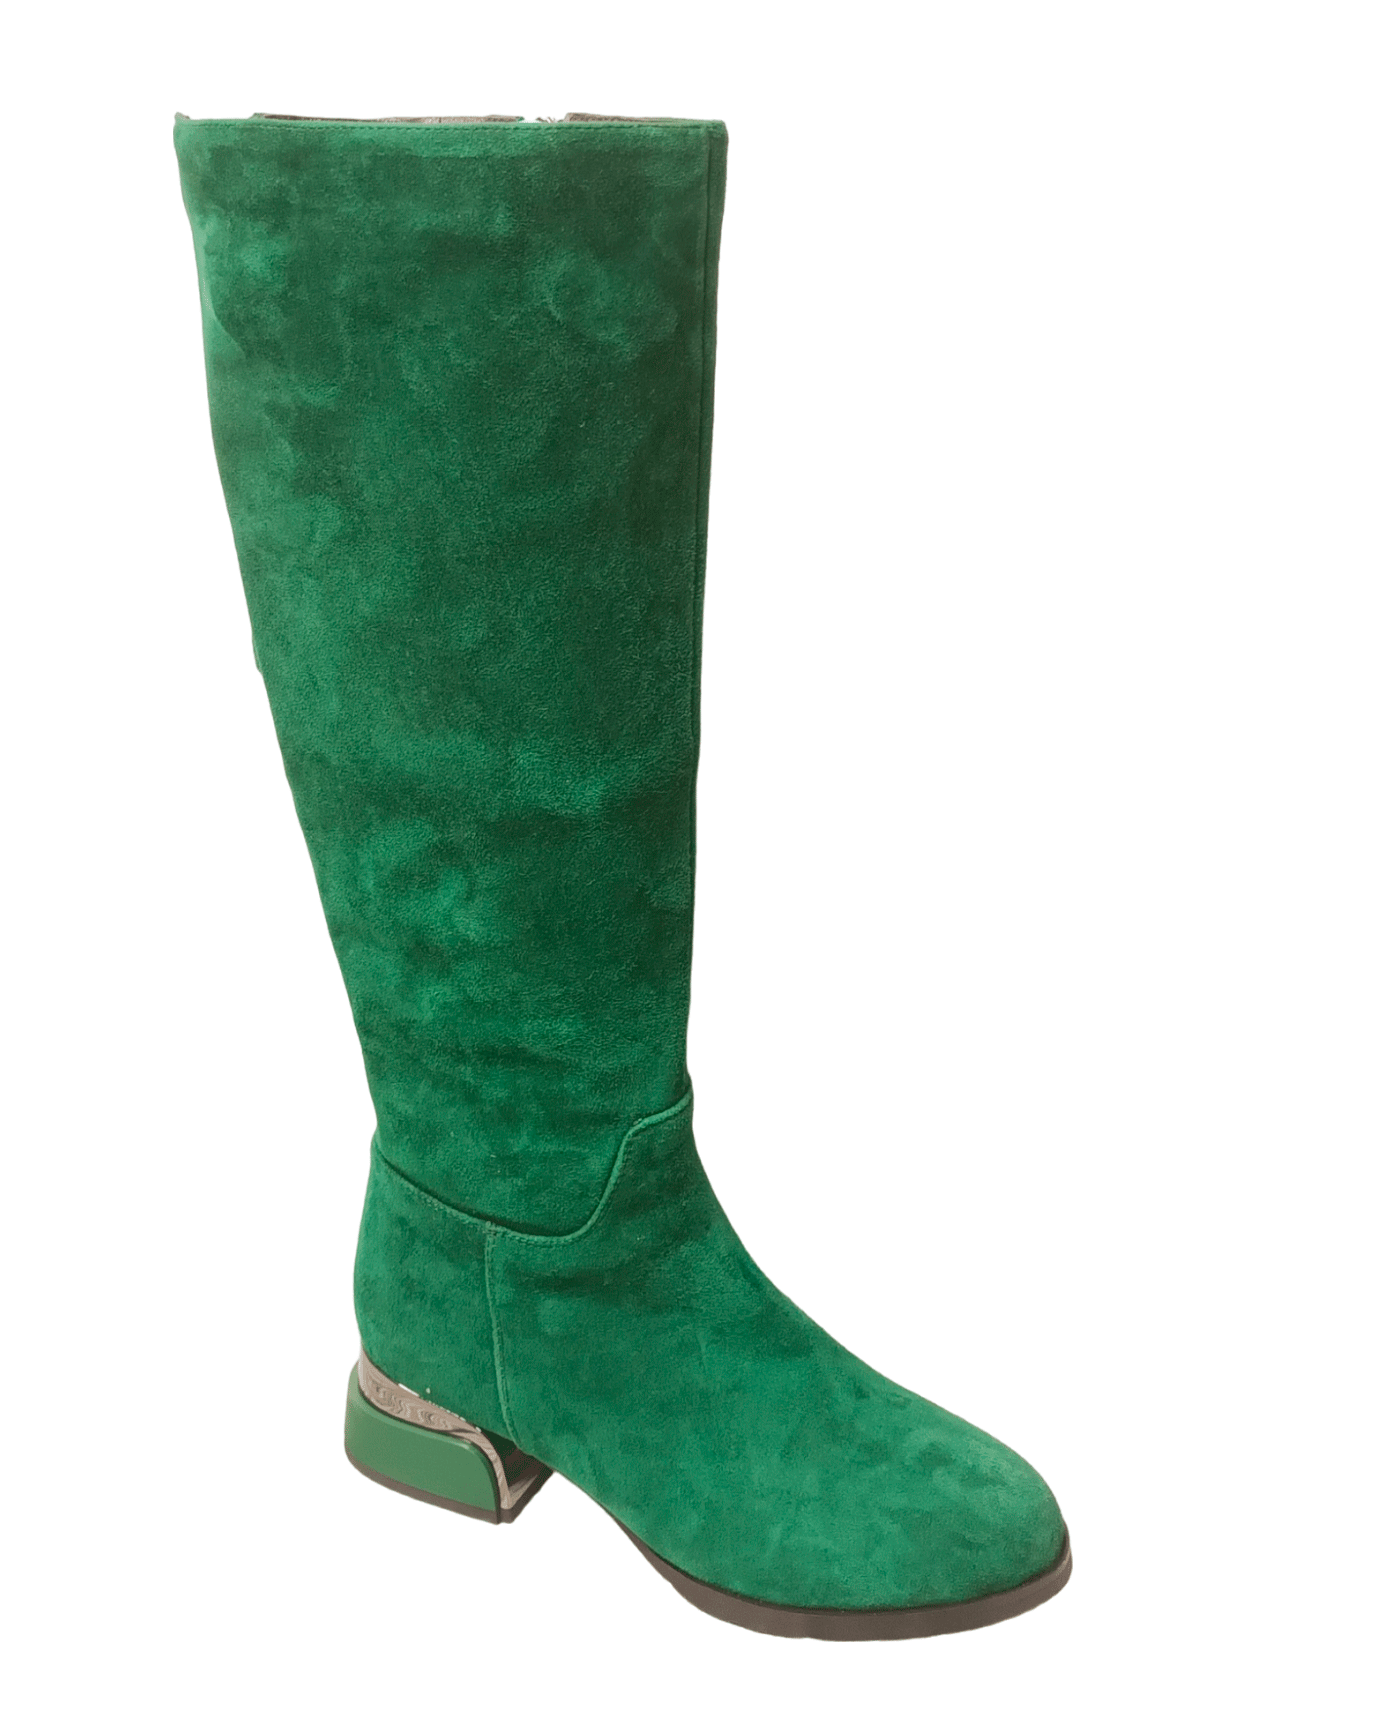 Сапоги женские зимние замшевые зеленые Z232-10